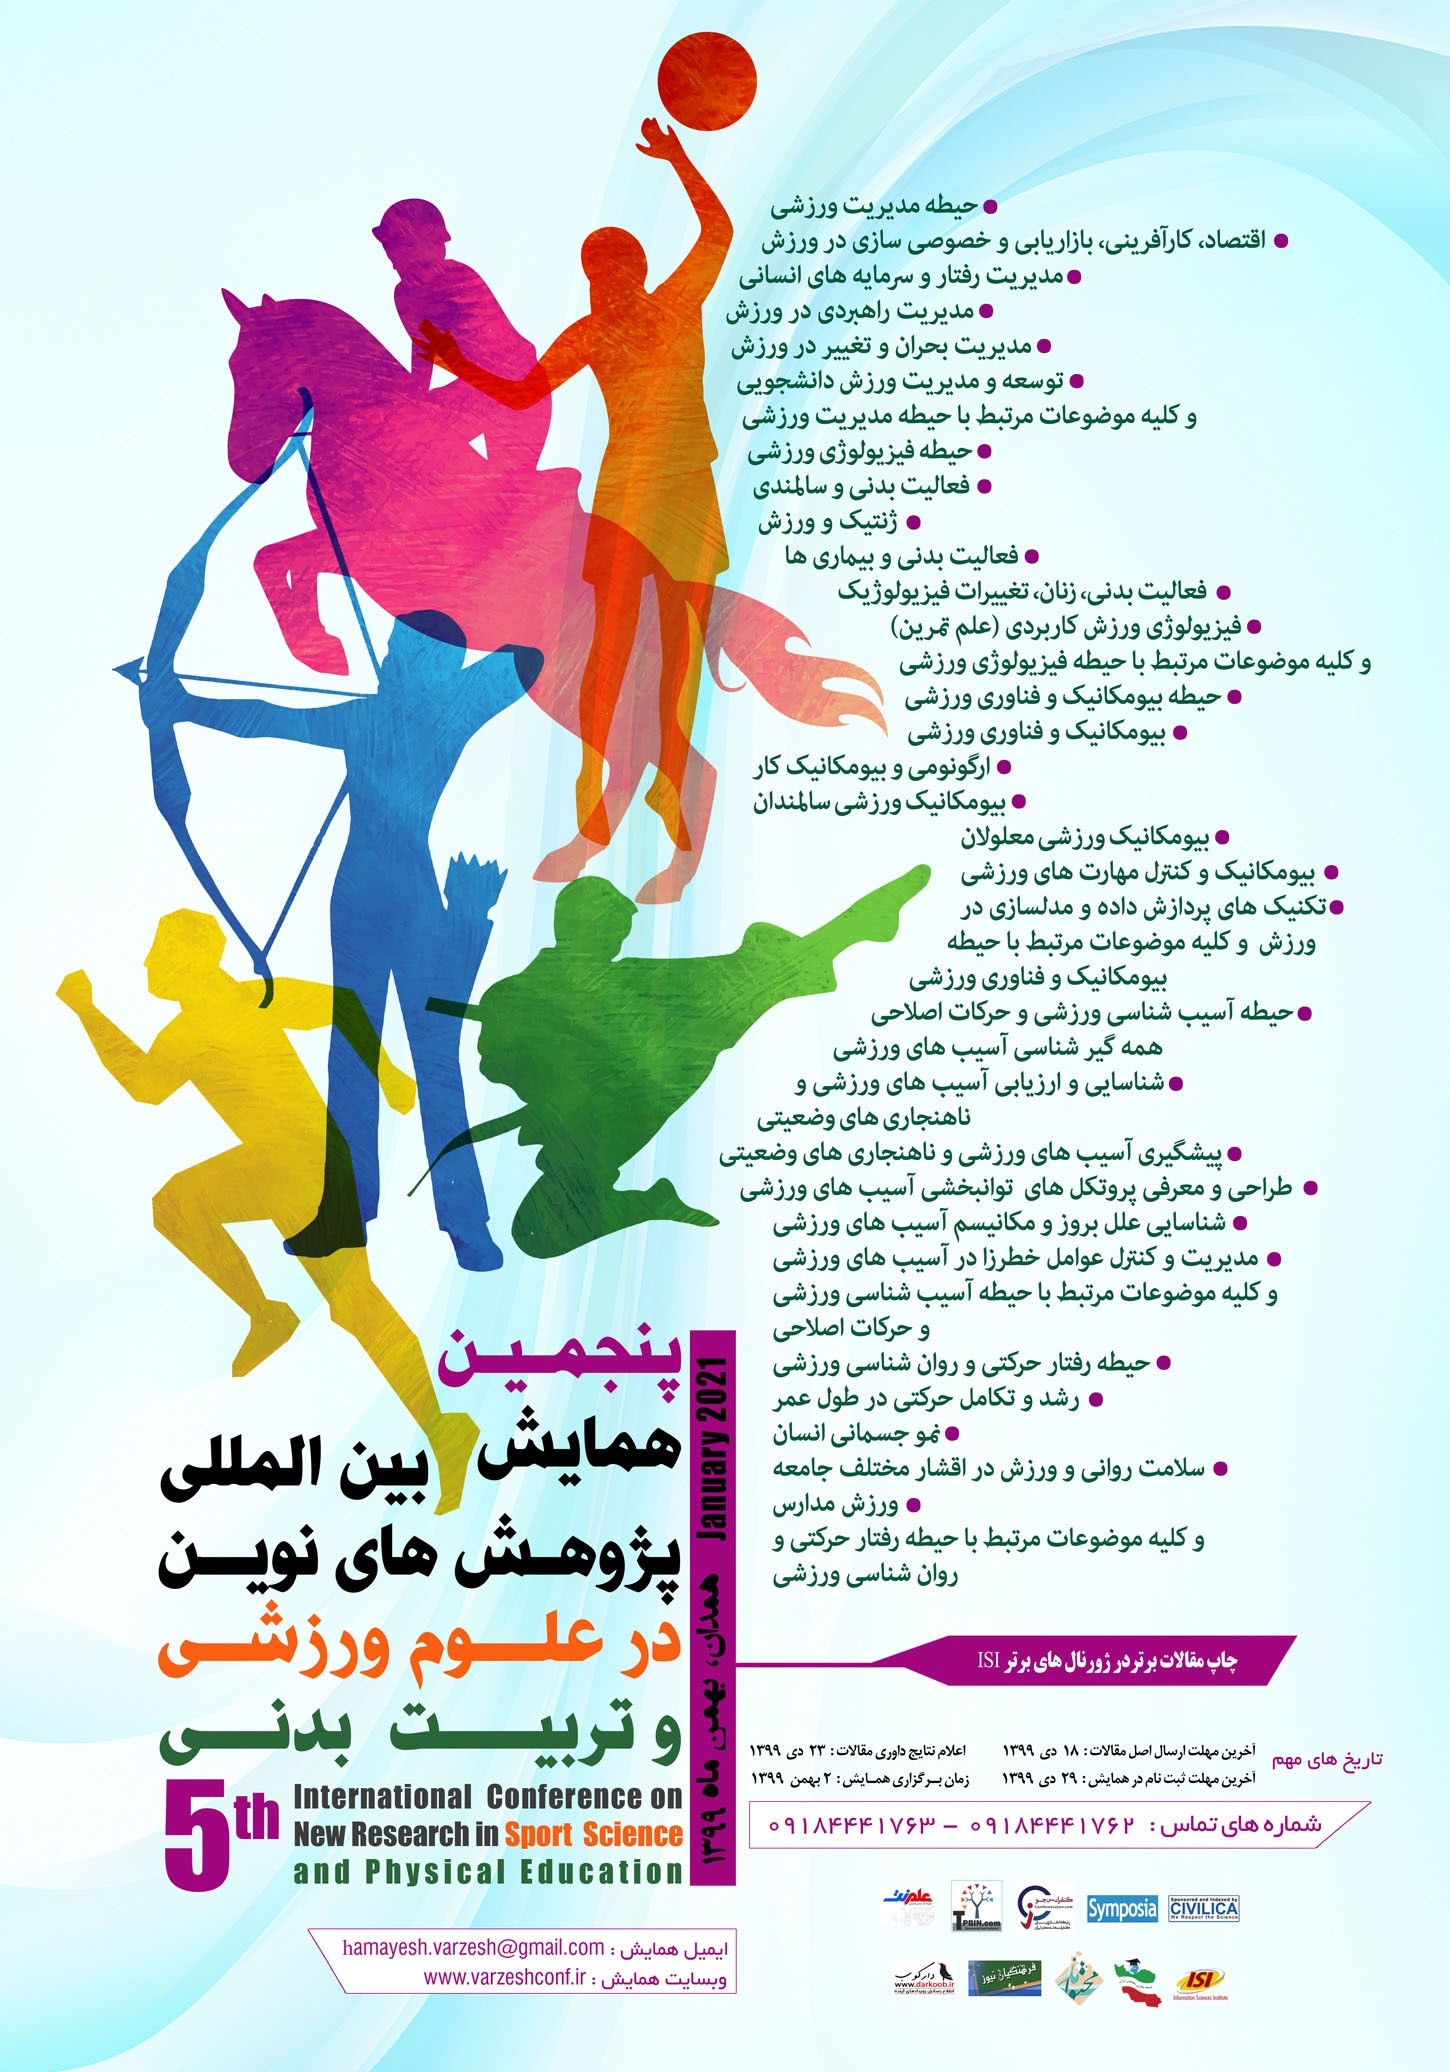 پوستر پنجمین همایش بین المللی پژوهش های نوین در علوم ورزشی و تربیت بدنی